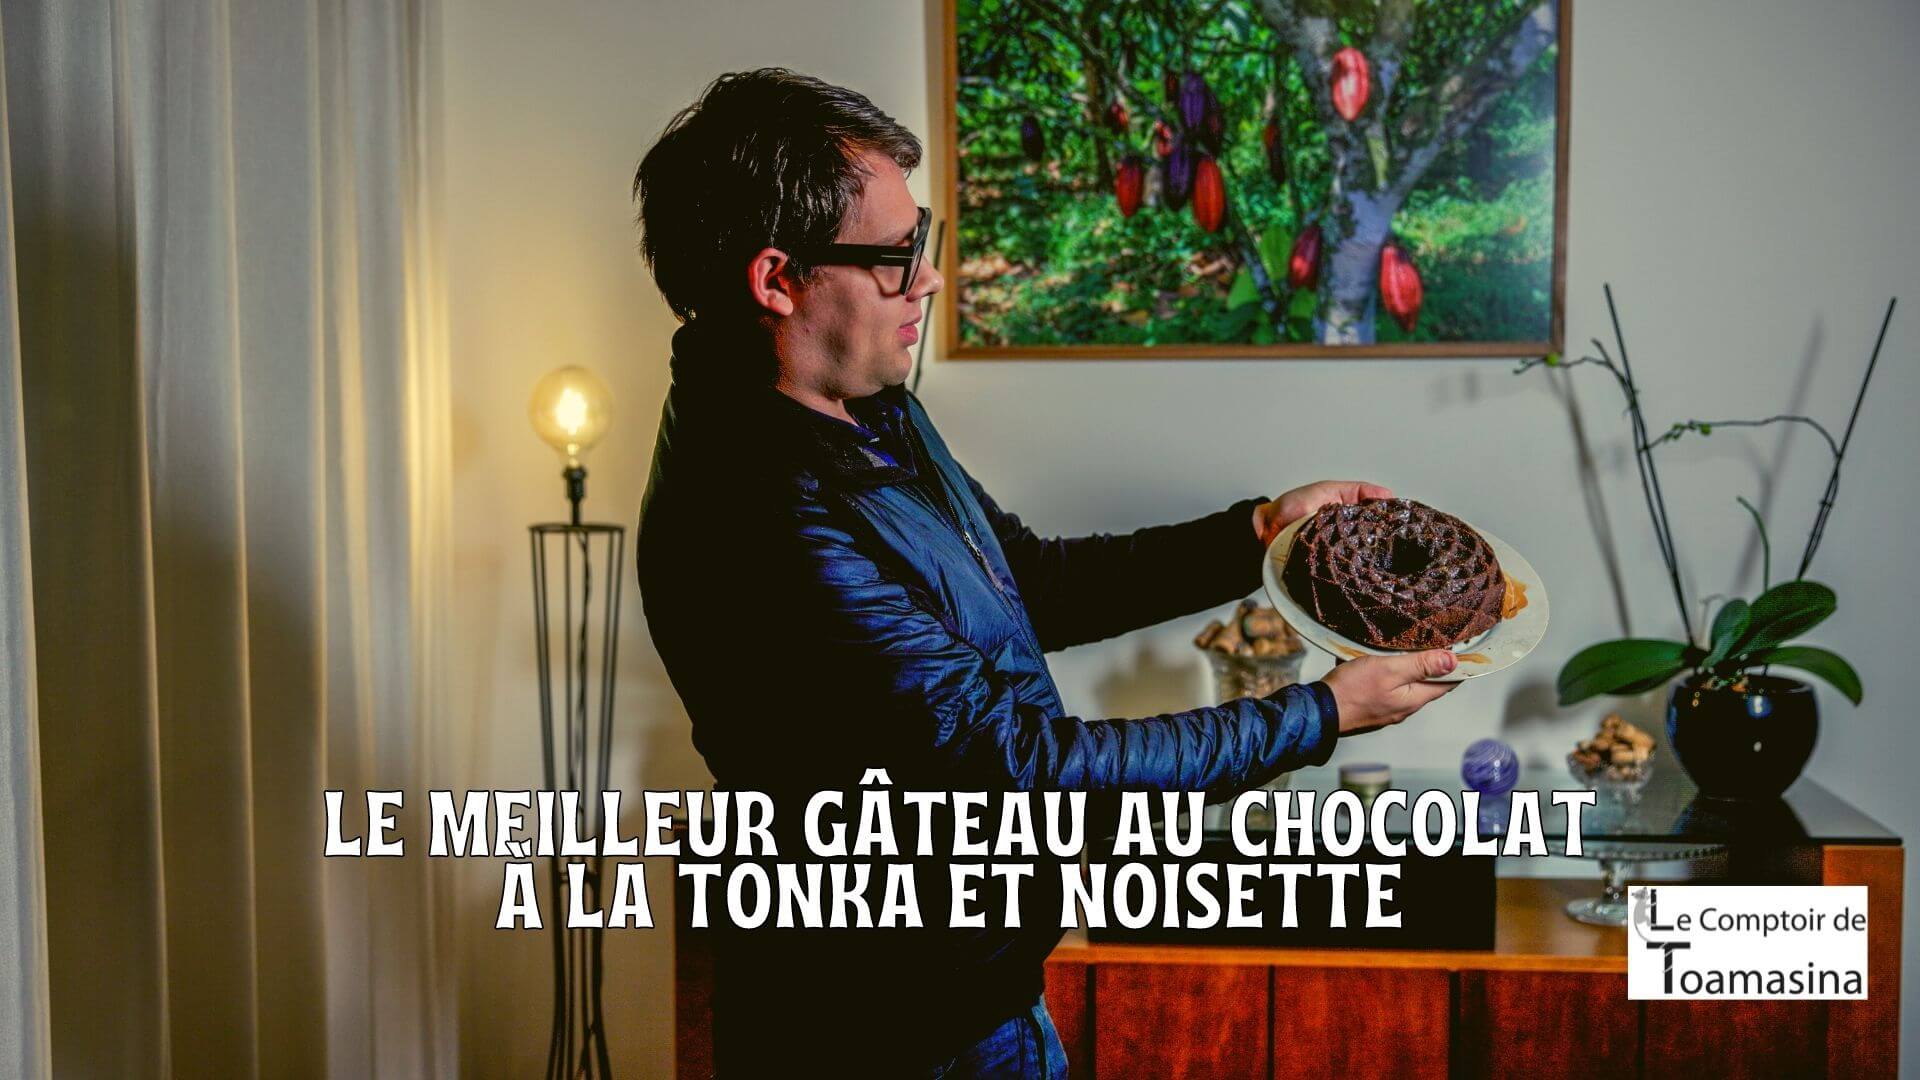 Gateau fondant chocolat noisette tonka - Kayapos